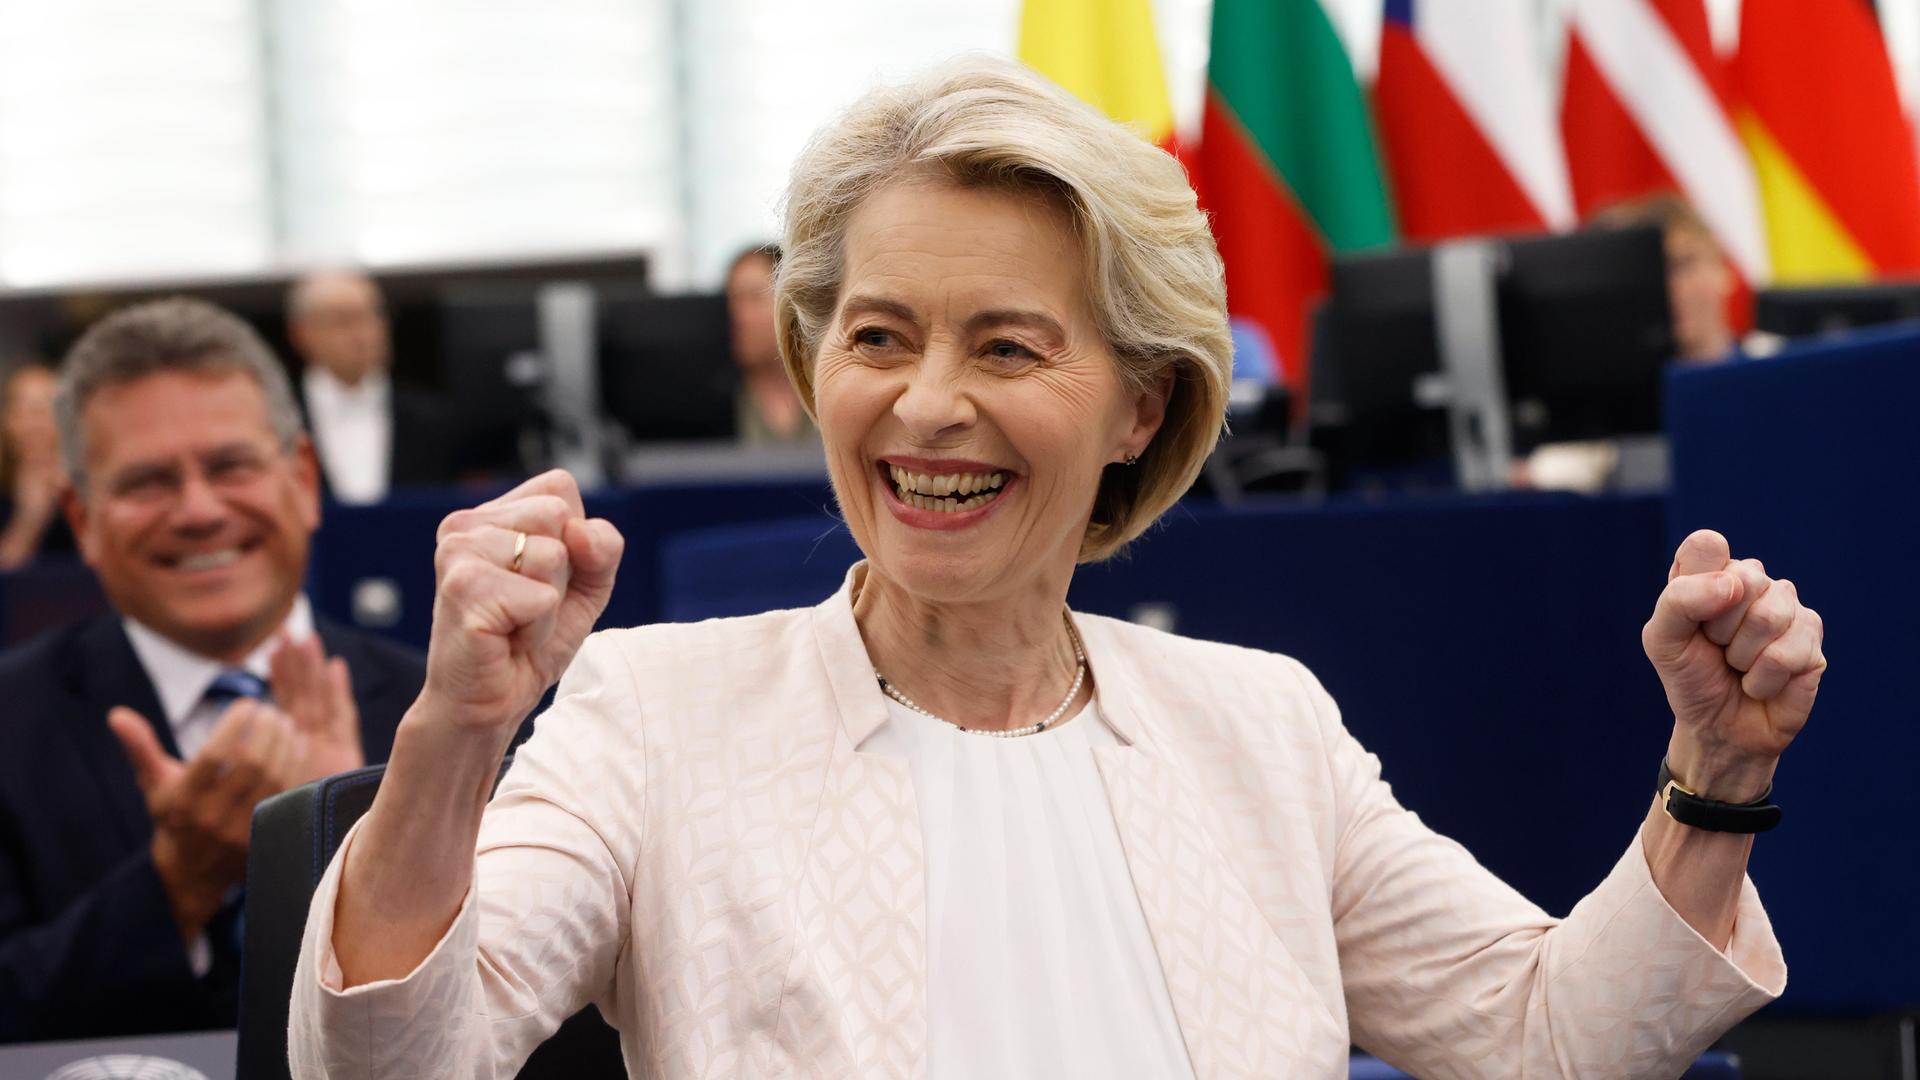 Ursula von der Leyen lächeln und die Fäuste gehoben, nachdem sie zur EU-Kommissionspräsidentin wiedergewählt worden ist. 